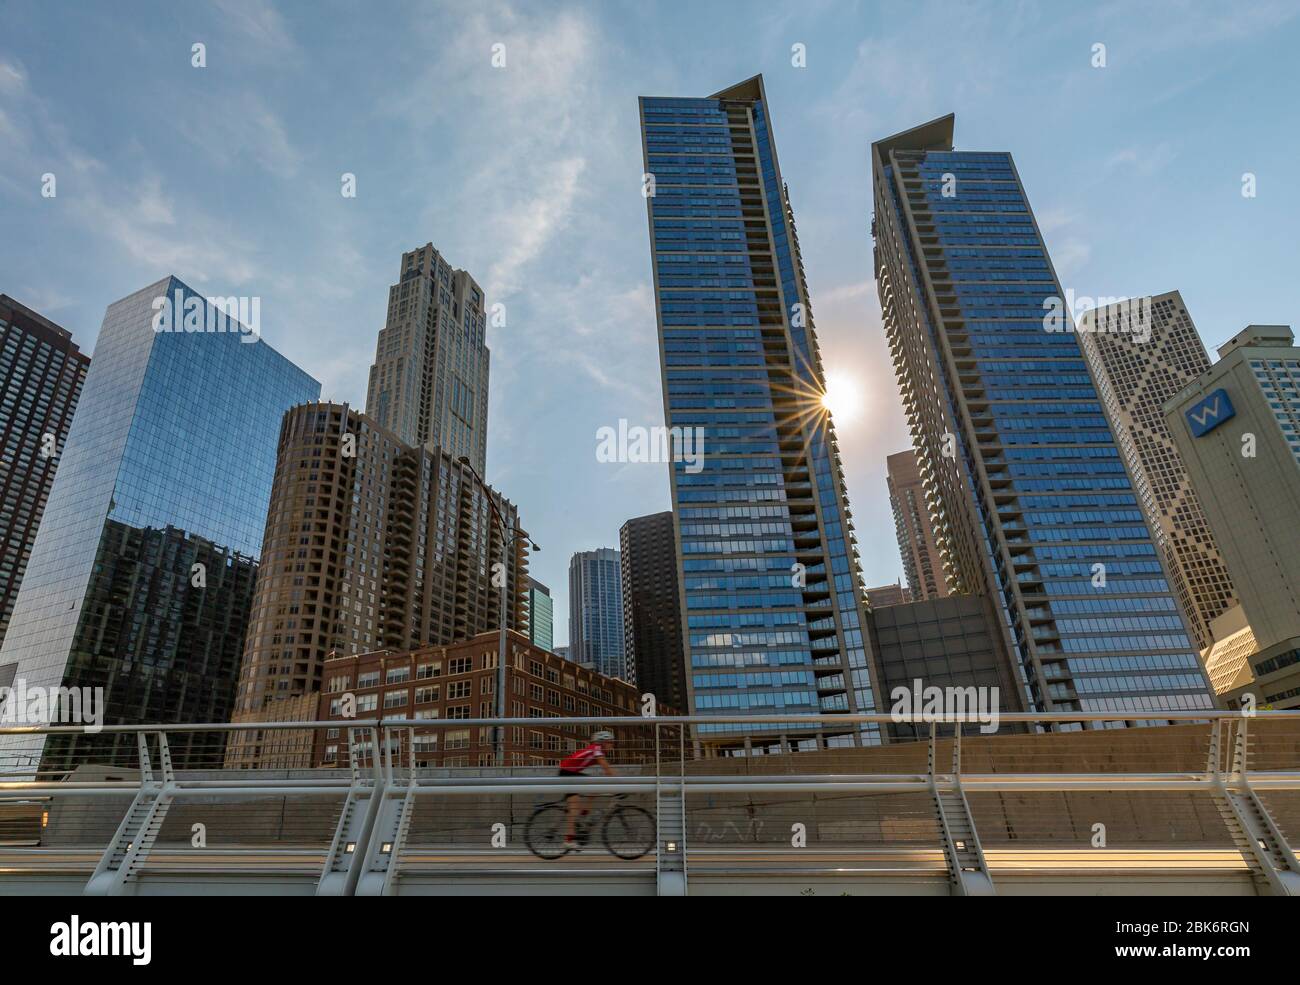 Vue sur le cycliste et les gratte-ciel de Chicago près de Navy Pier, Chicago, Illinois, États-Unis d'Amérique, Amérique du Nord Banque D'Images